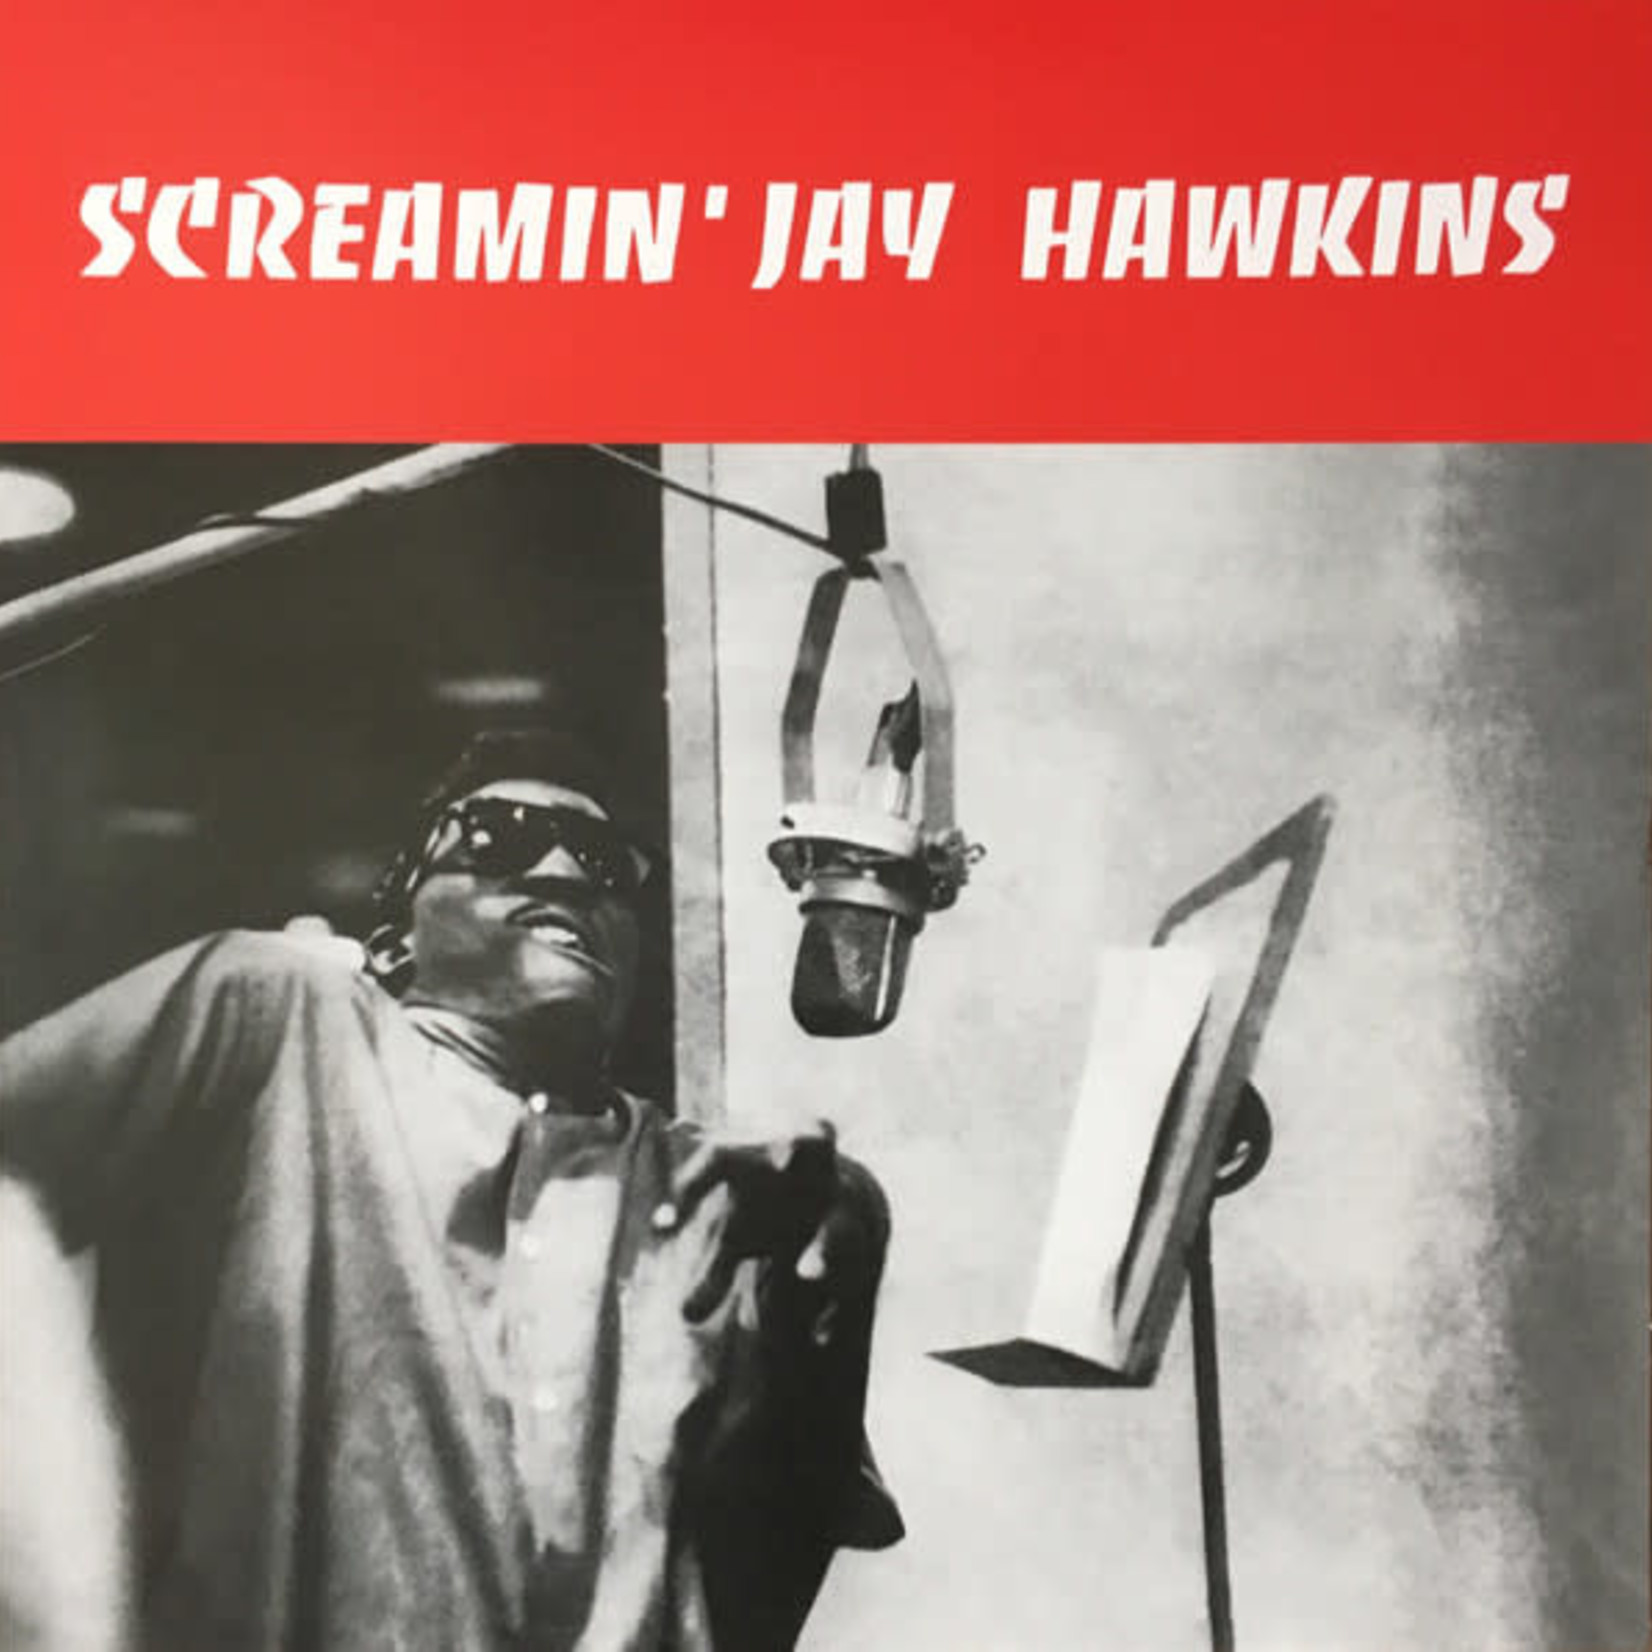 Screamin' Jay Hawkins – Screamin' Jay Hawkins